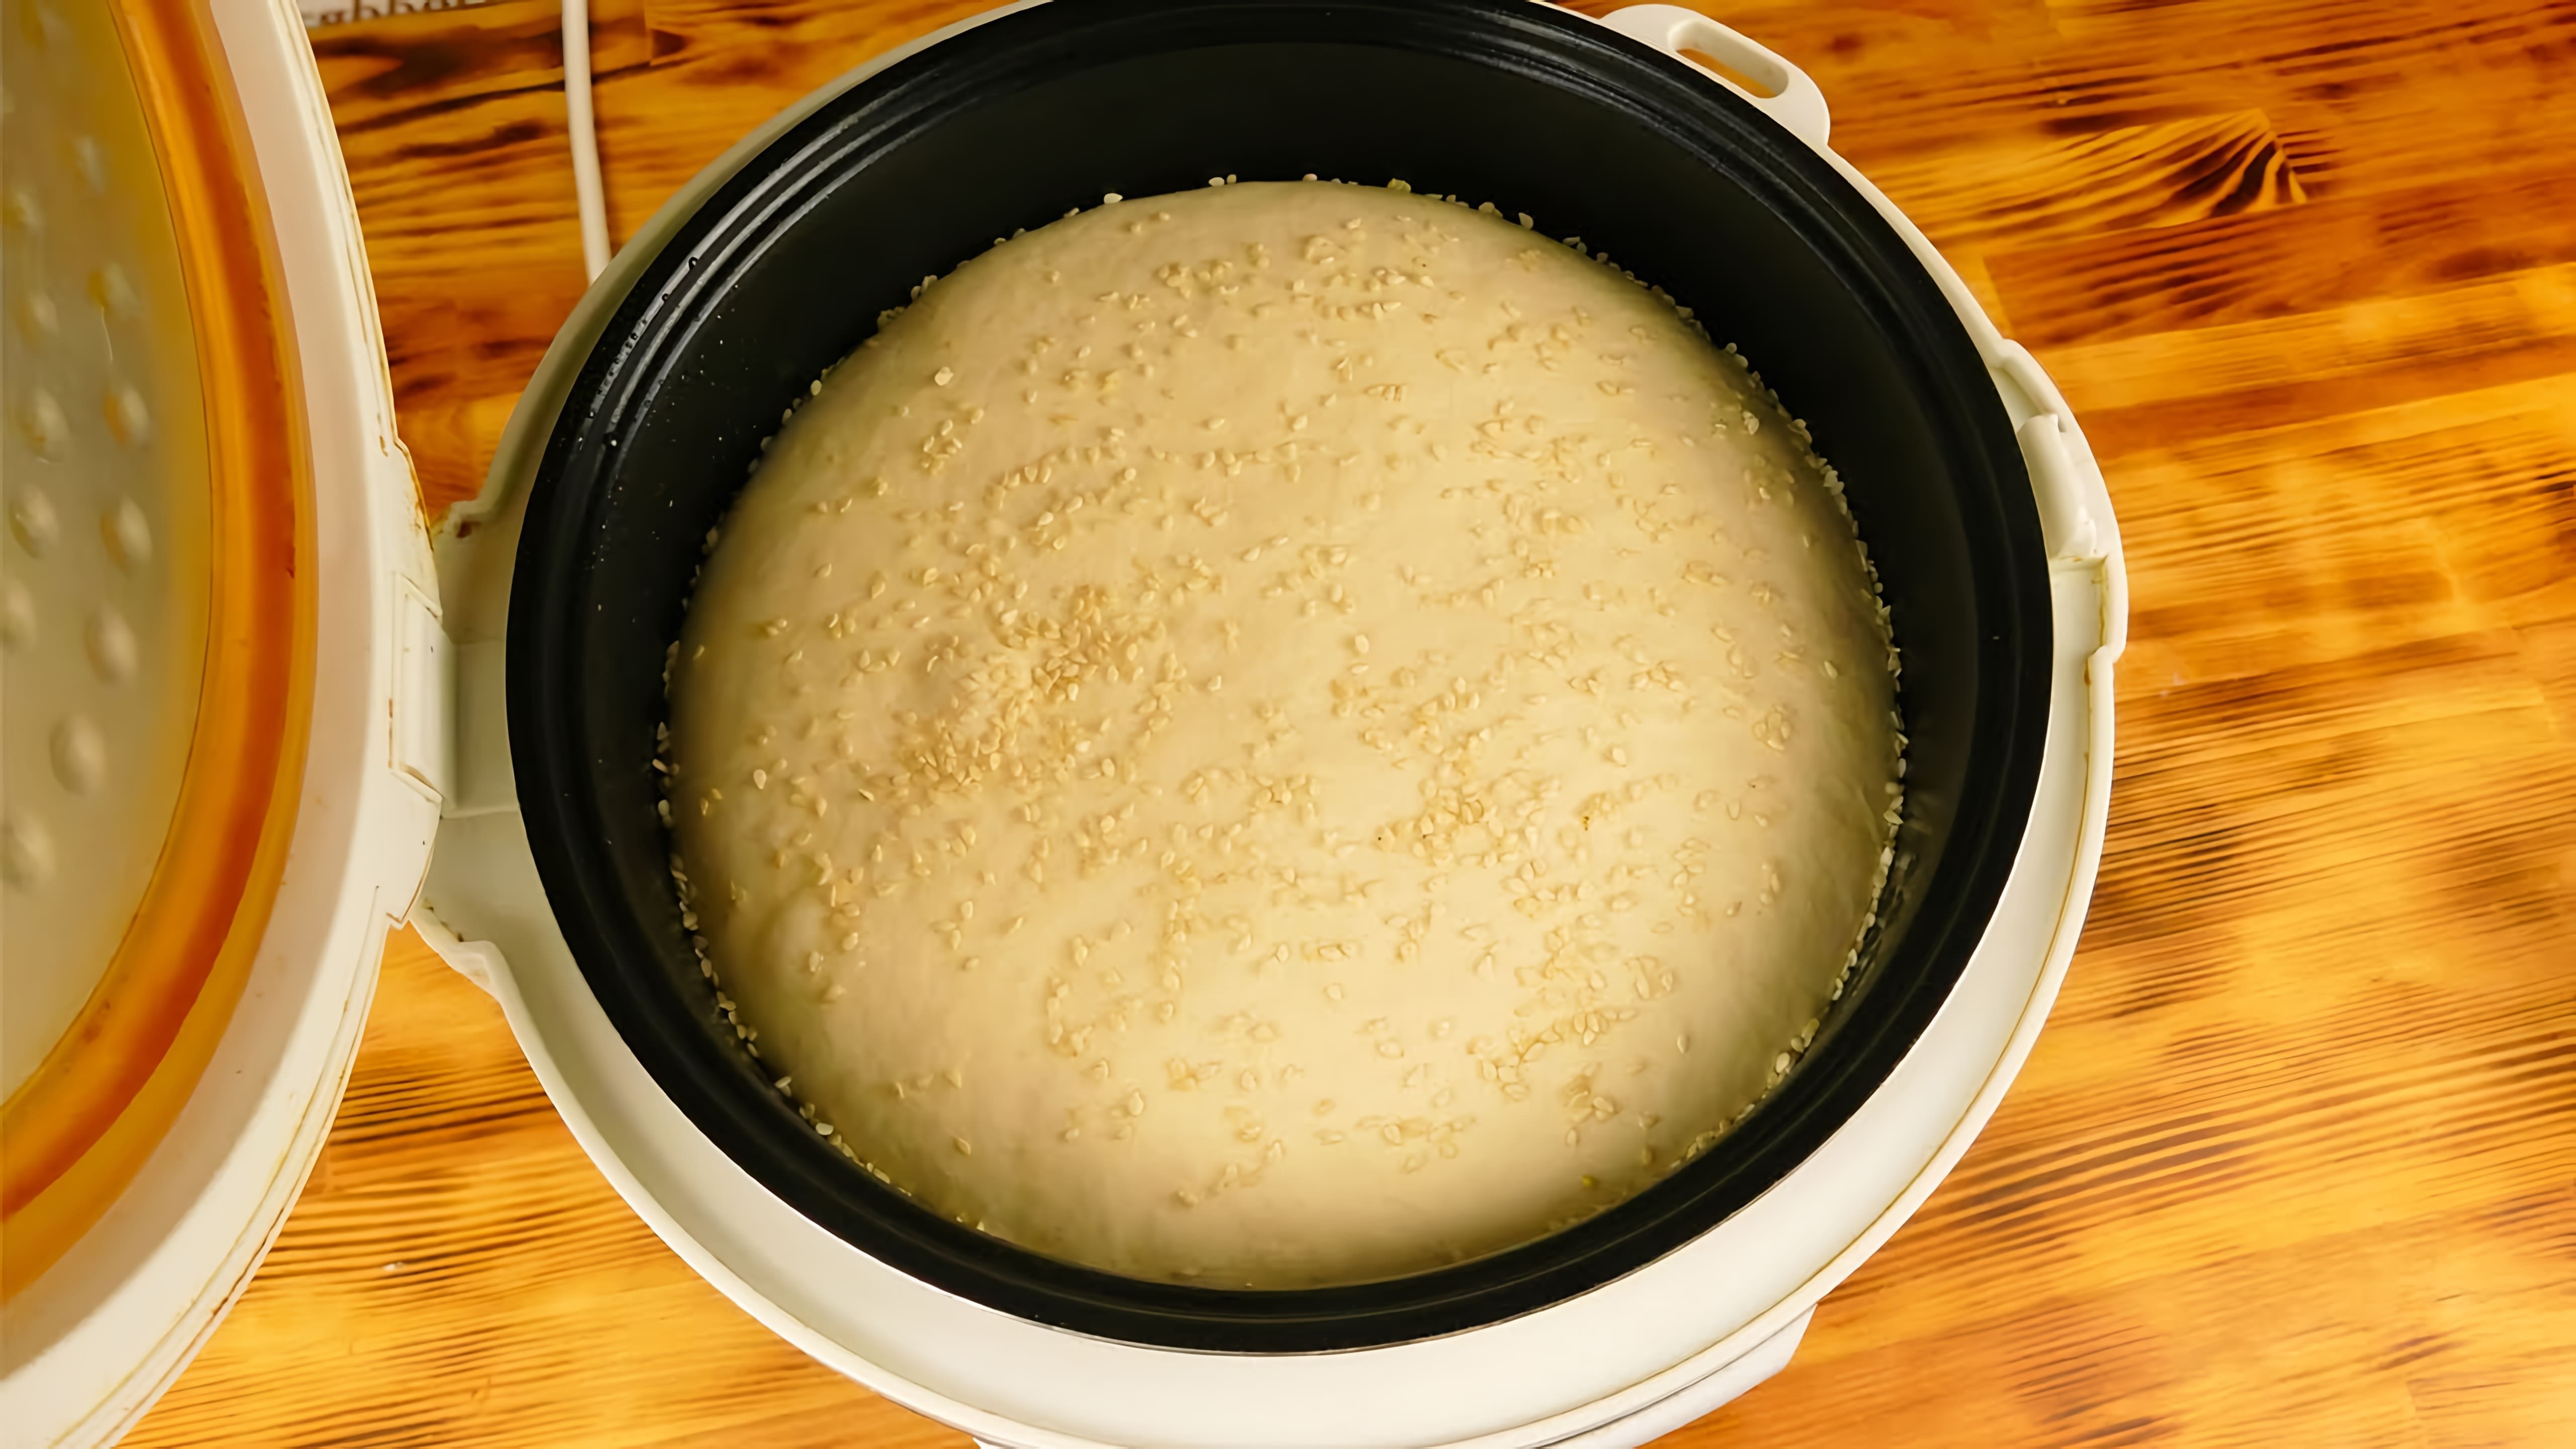 В этом видео демонстрируется процесс приготовления домашнего хлеба в мультиварке